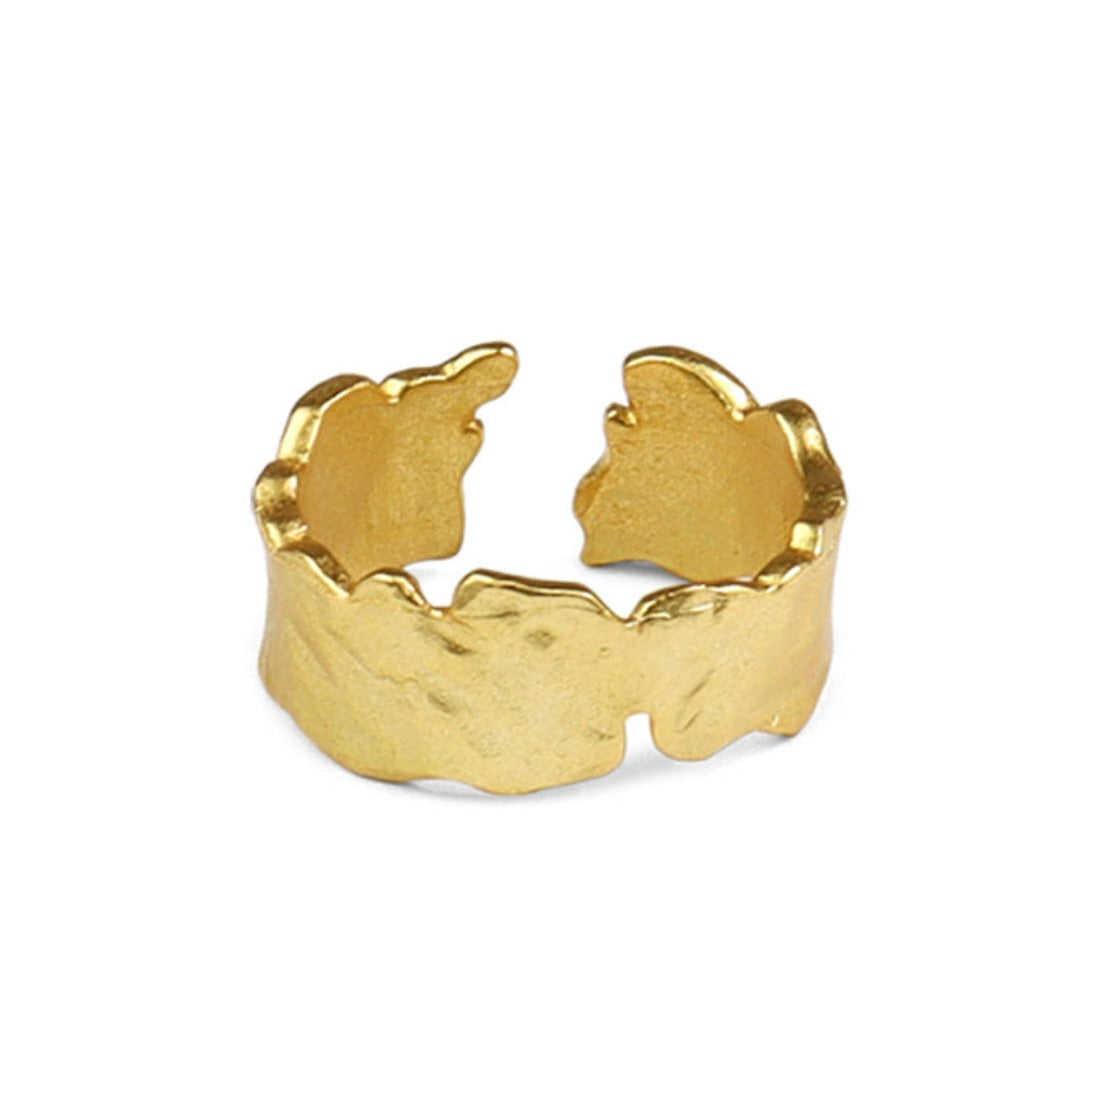 Irregular Gold Nugget Ring